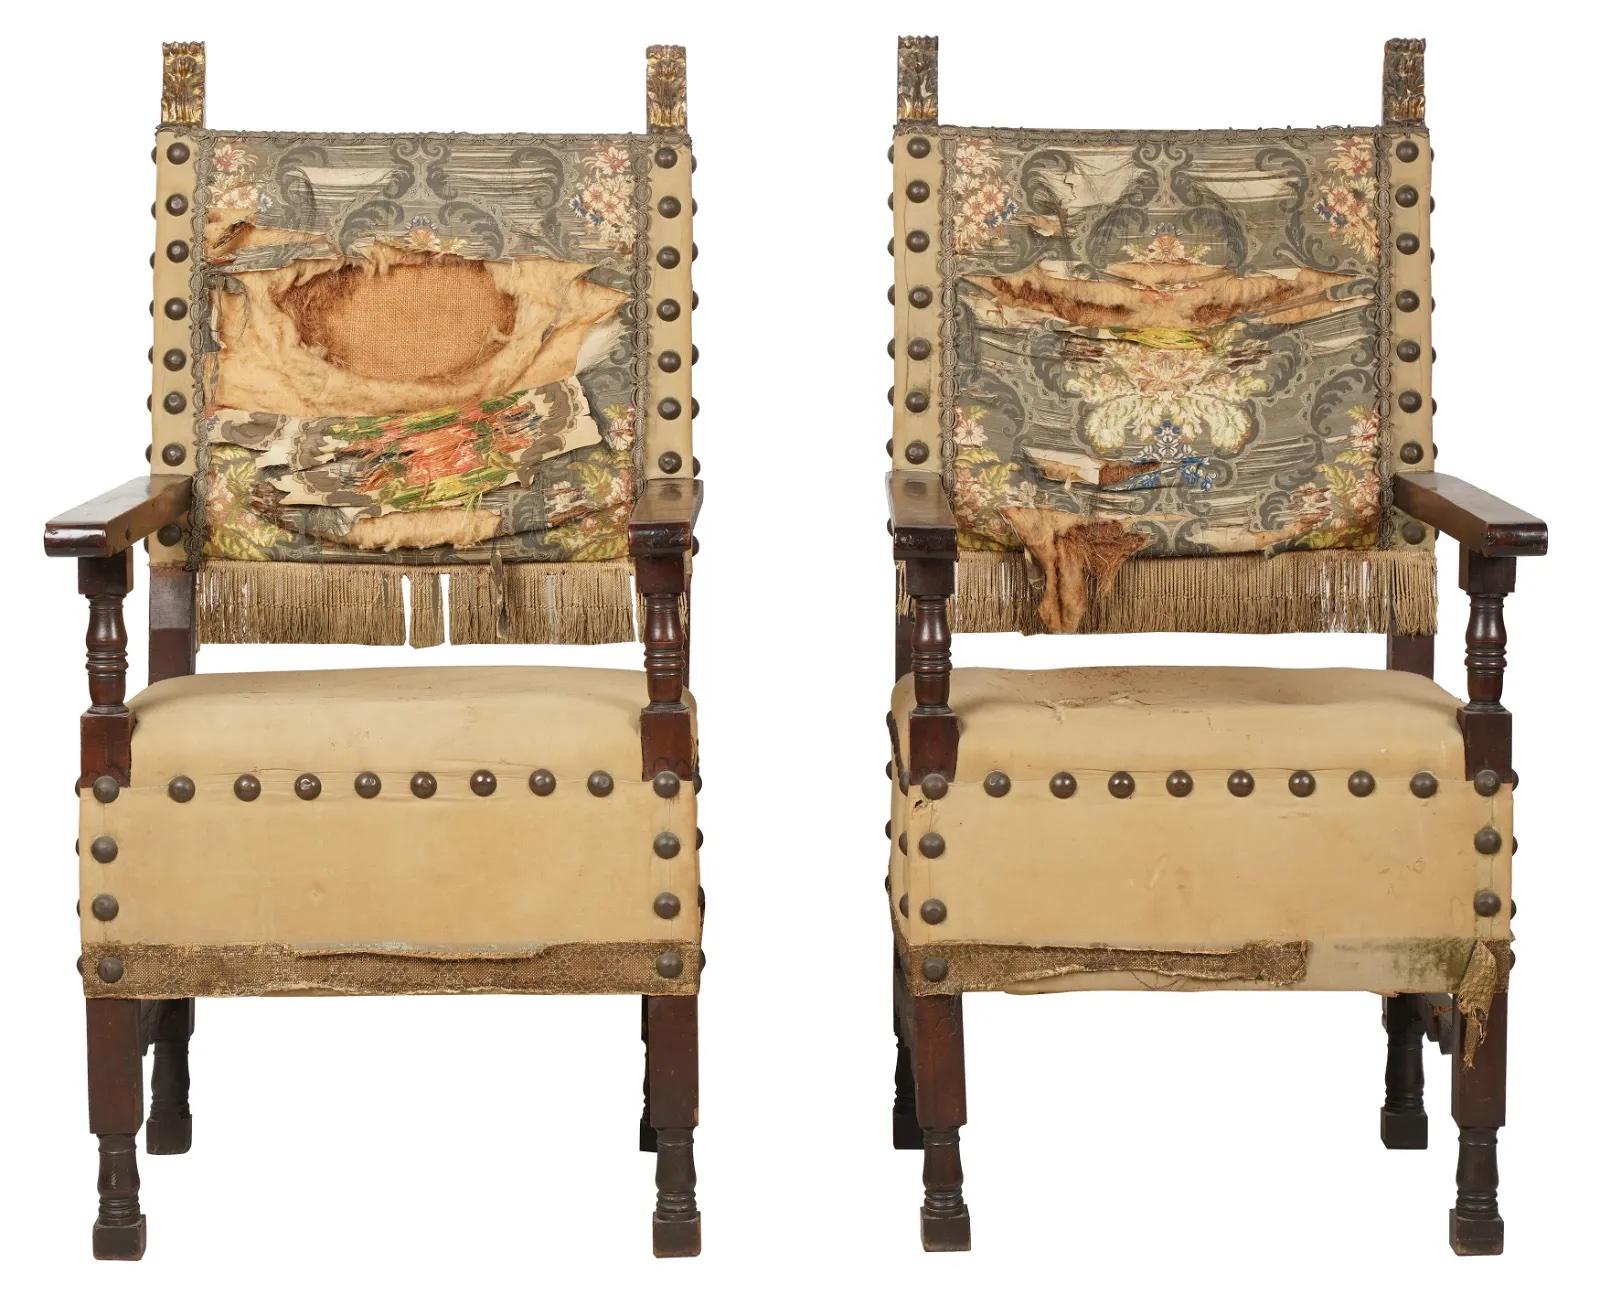 Paire de grands fauteuils en noyer de style baroque espagnol - néo-colonial espagnol de la fin du XVIIIe siècle, avec de grandes têtes de clous en laiton. Besoin d'une nouvelle tapisserie d'ameublement. 